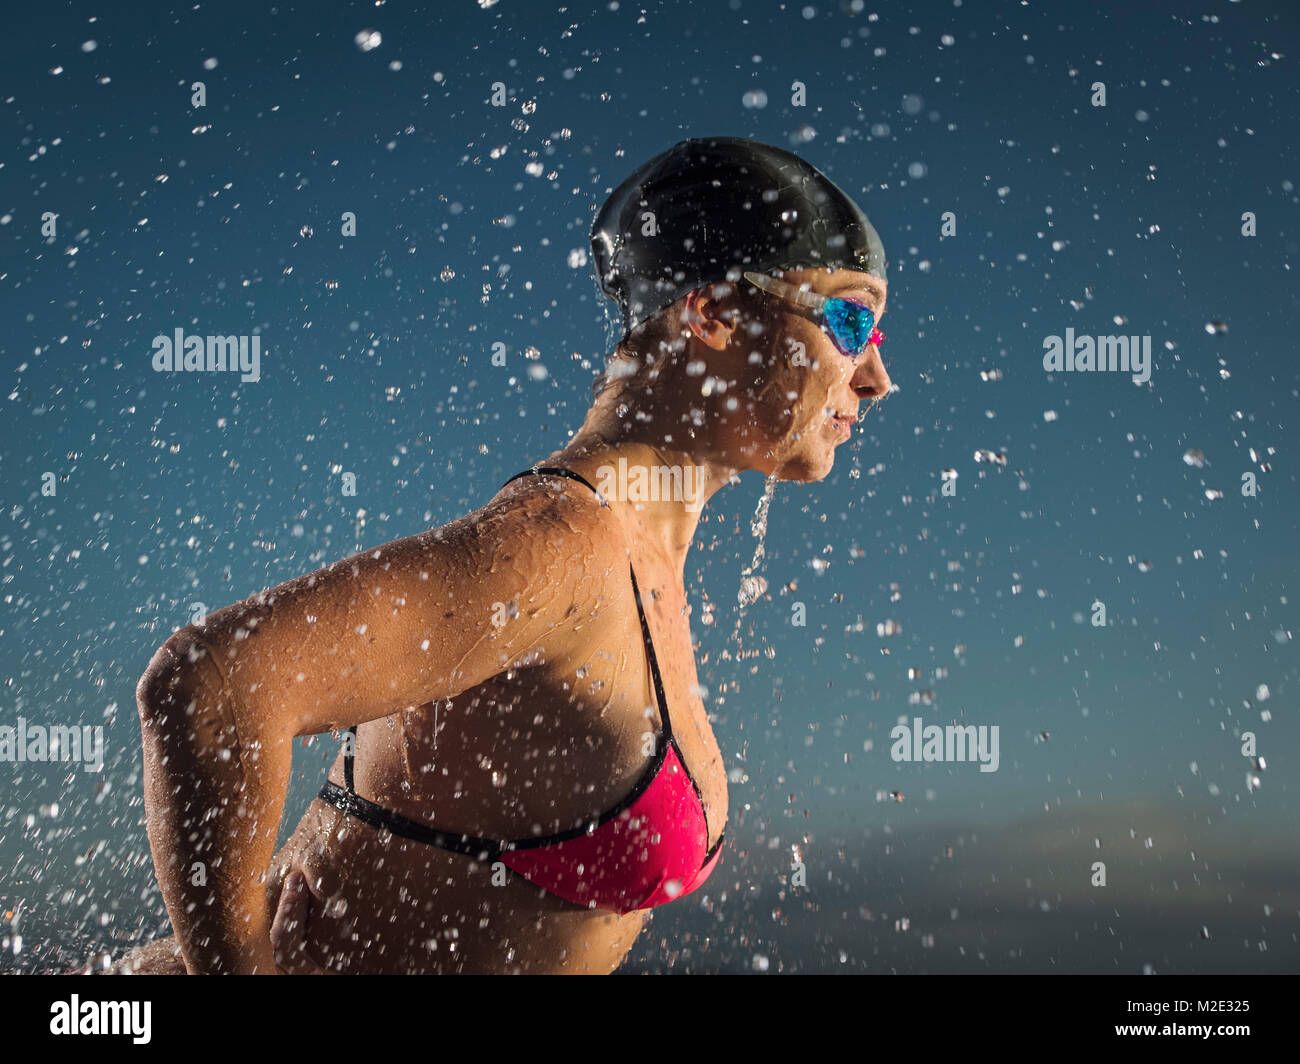 Water splashing on Caucasian swimmer Stock Photo